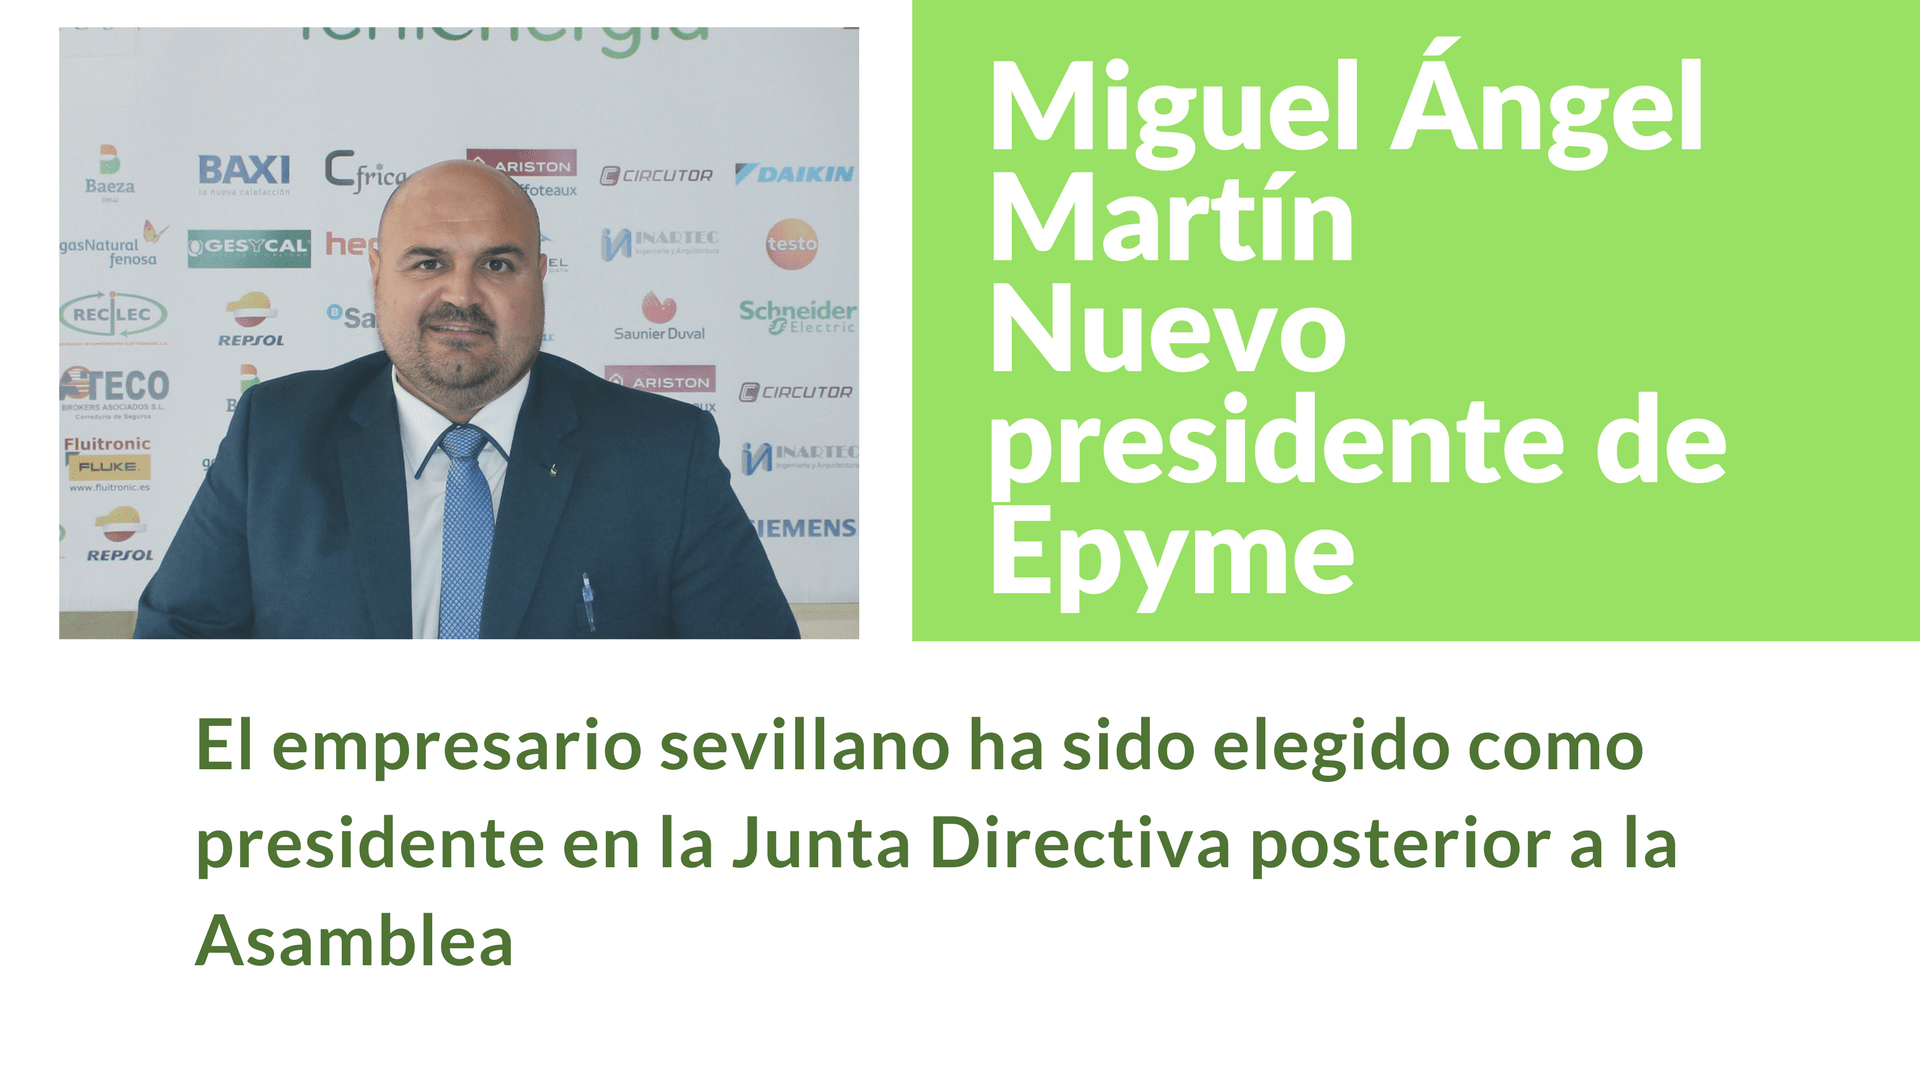 Miguel Ángel Martín nuevo presidente de Epyme